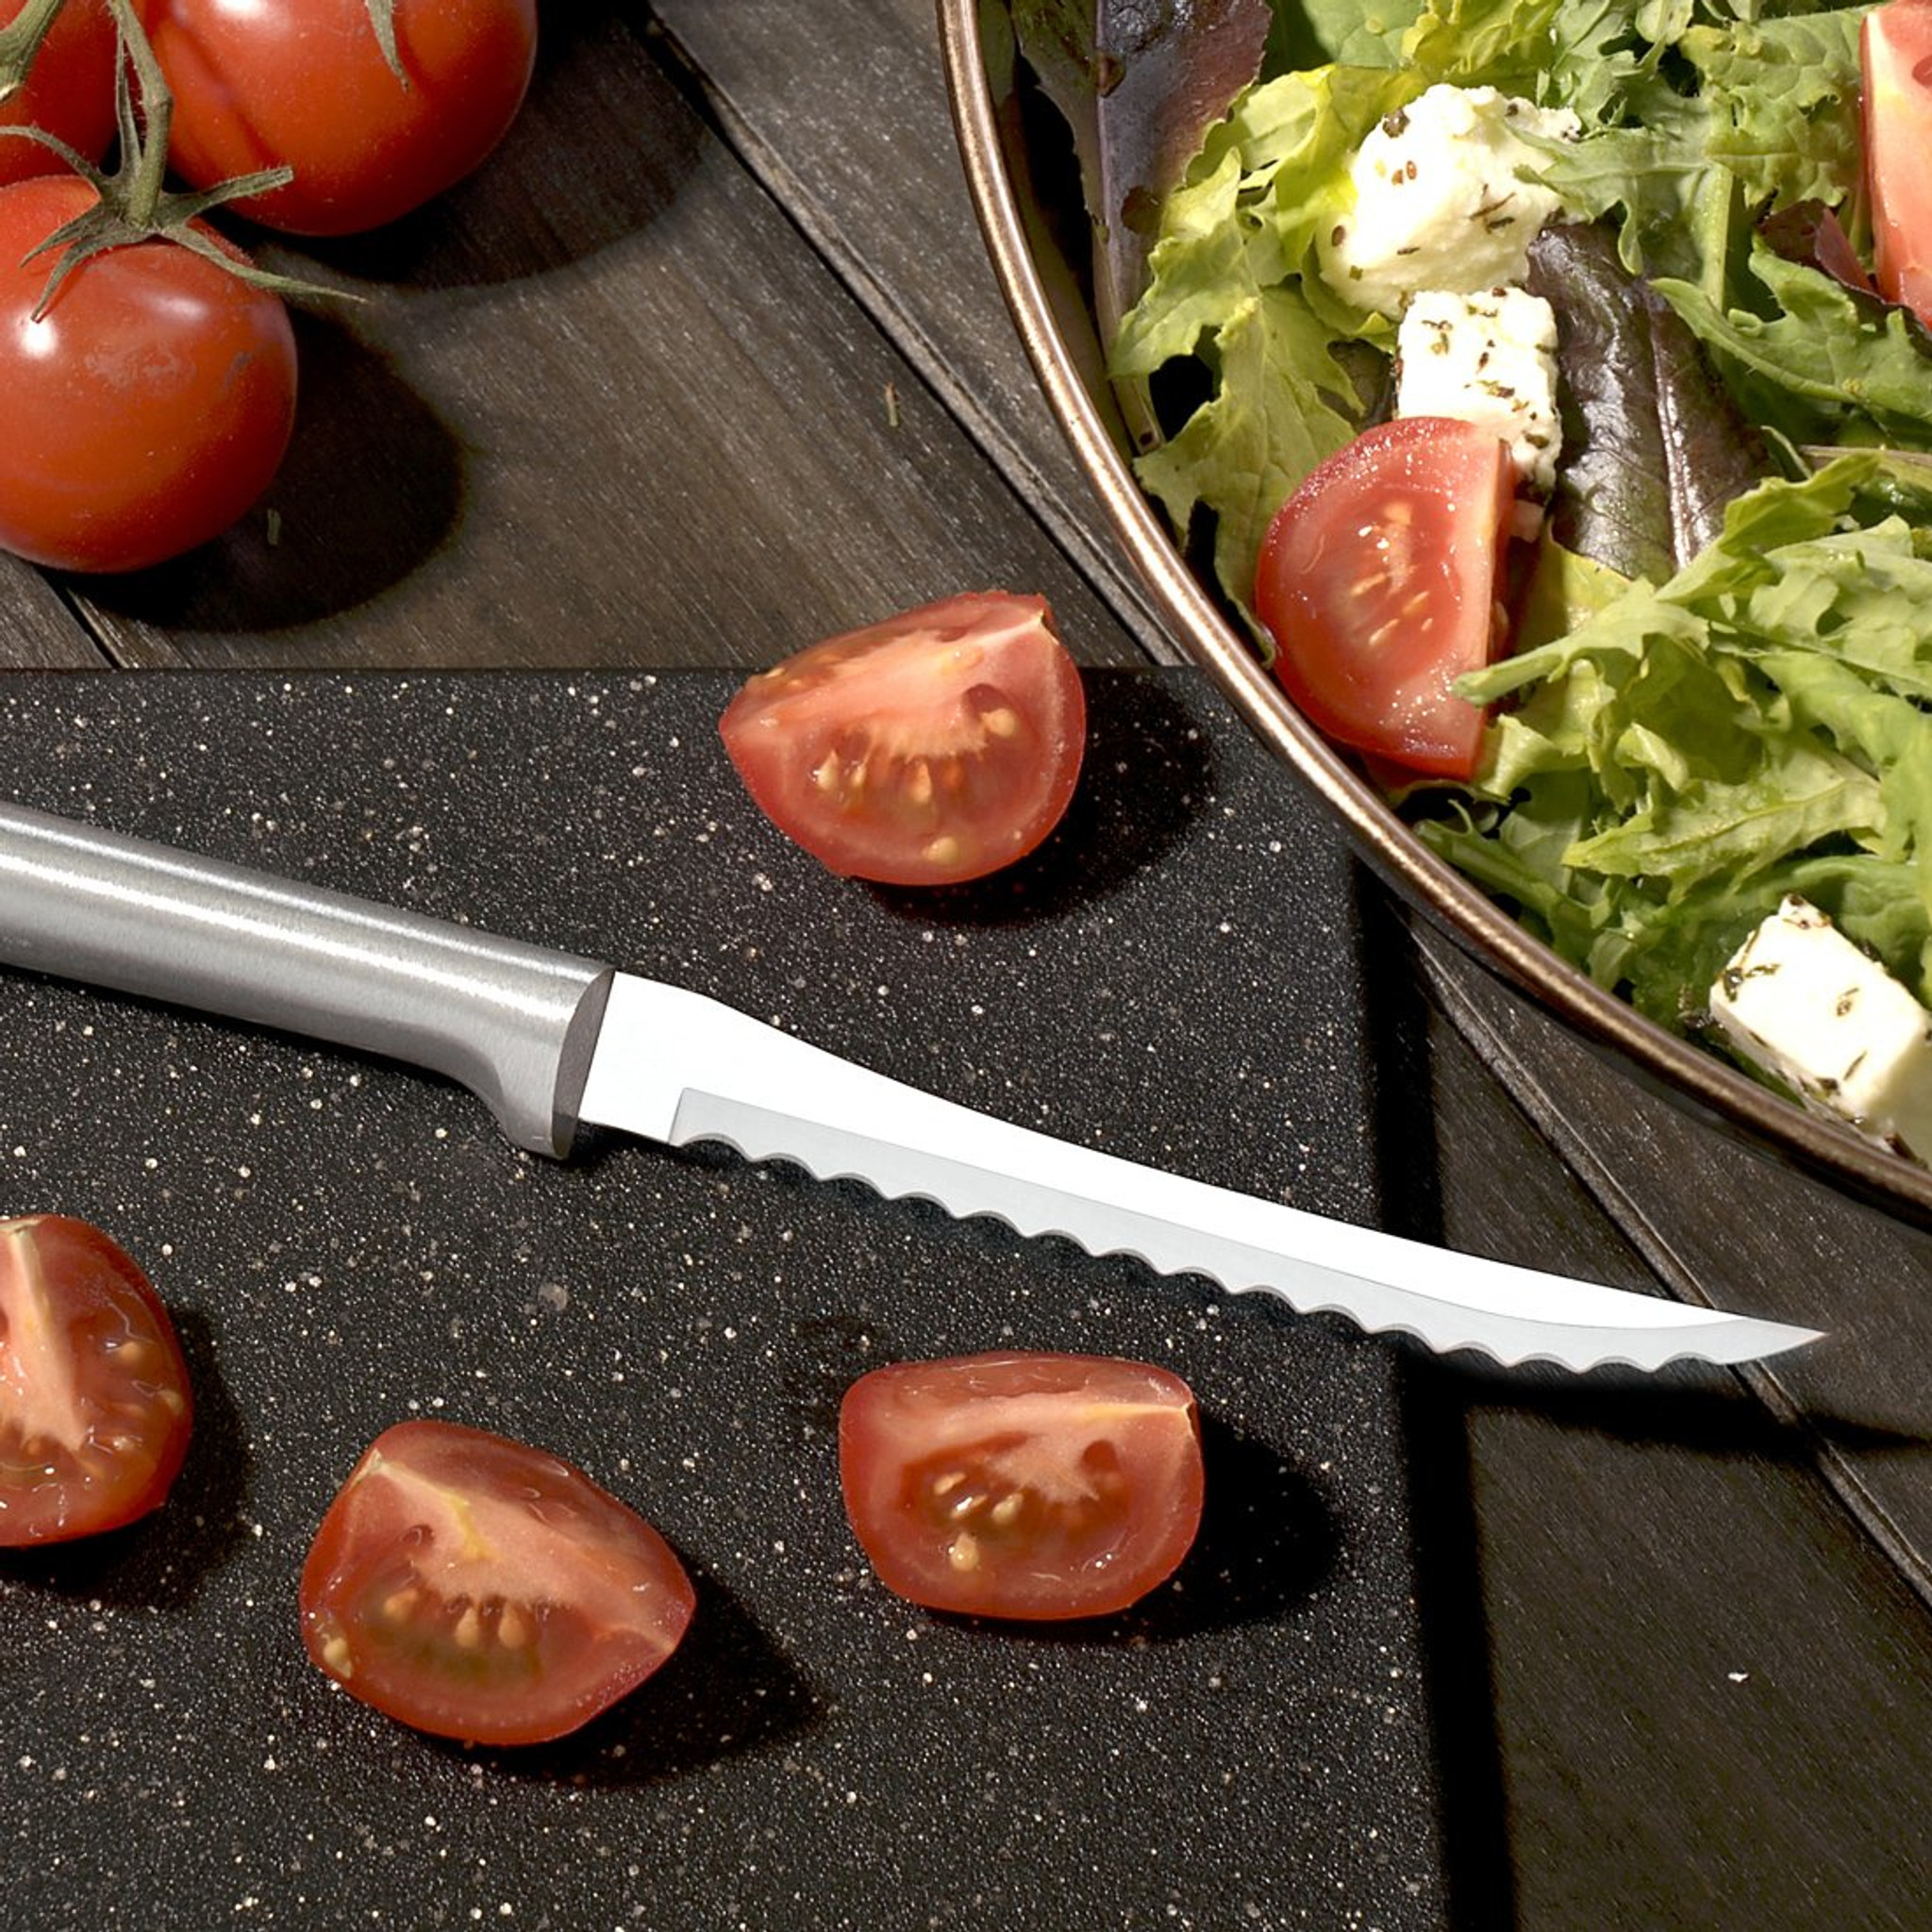 Rada Cutlery Serrated Slicer | Silver